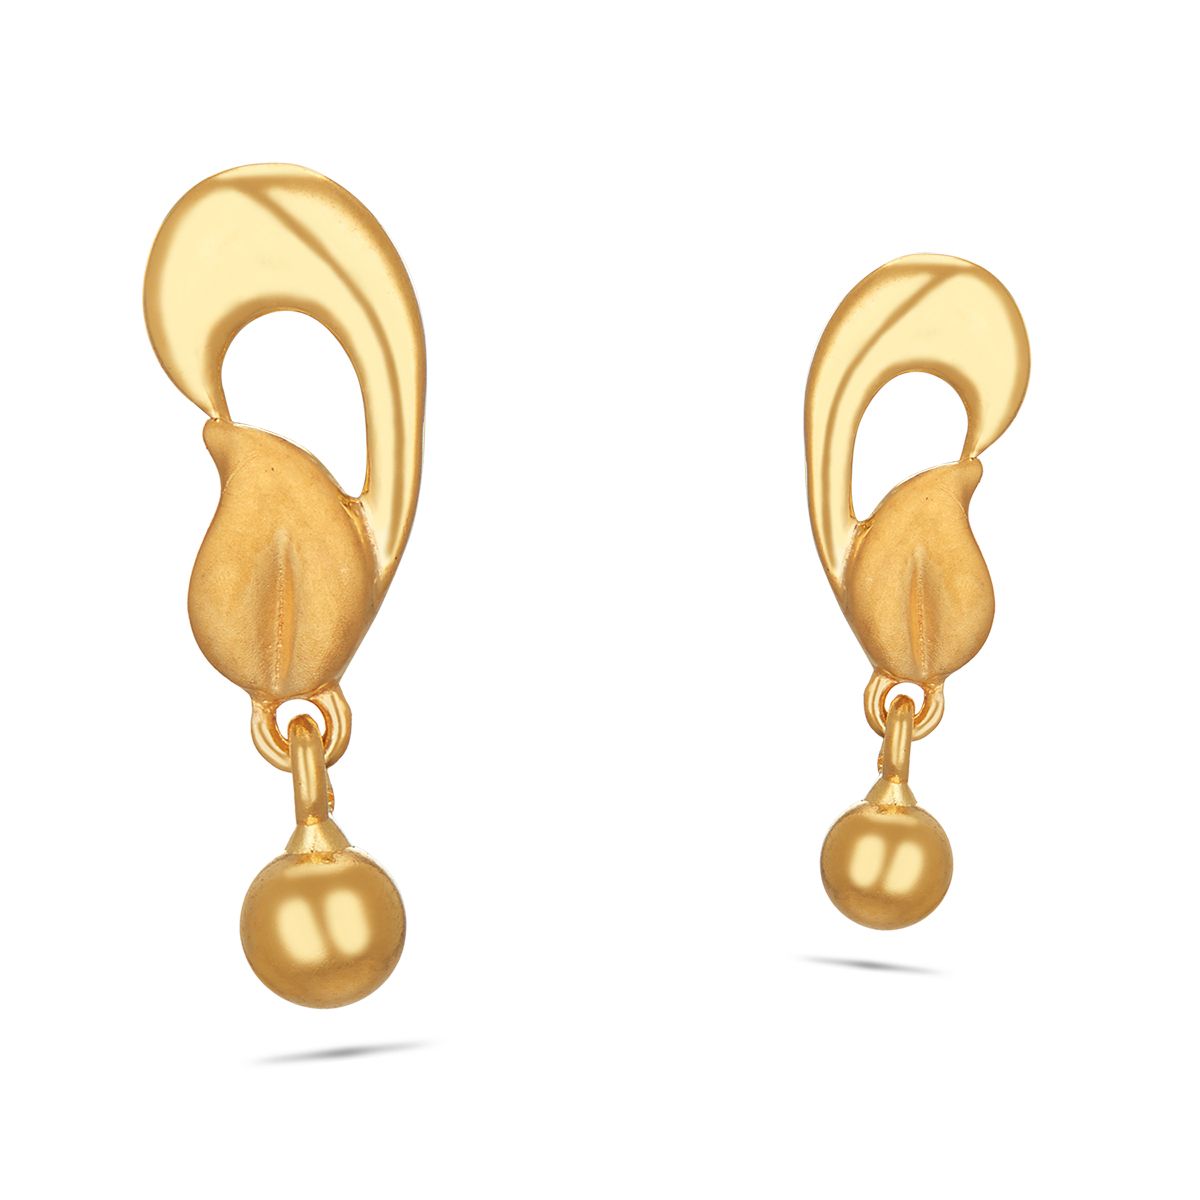 Gold Earring design online catalog